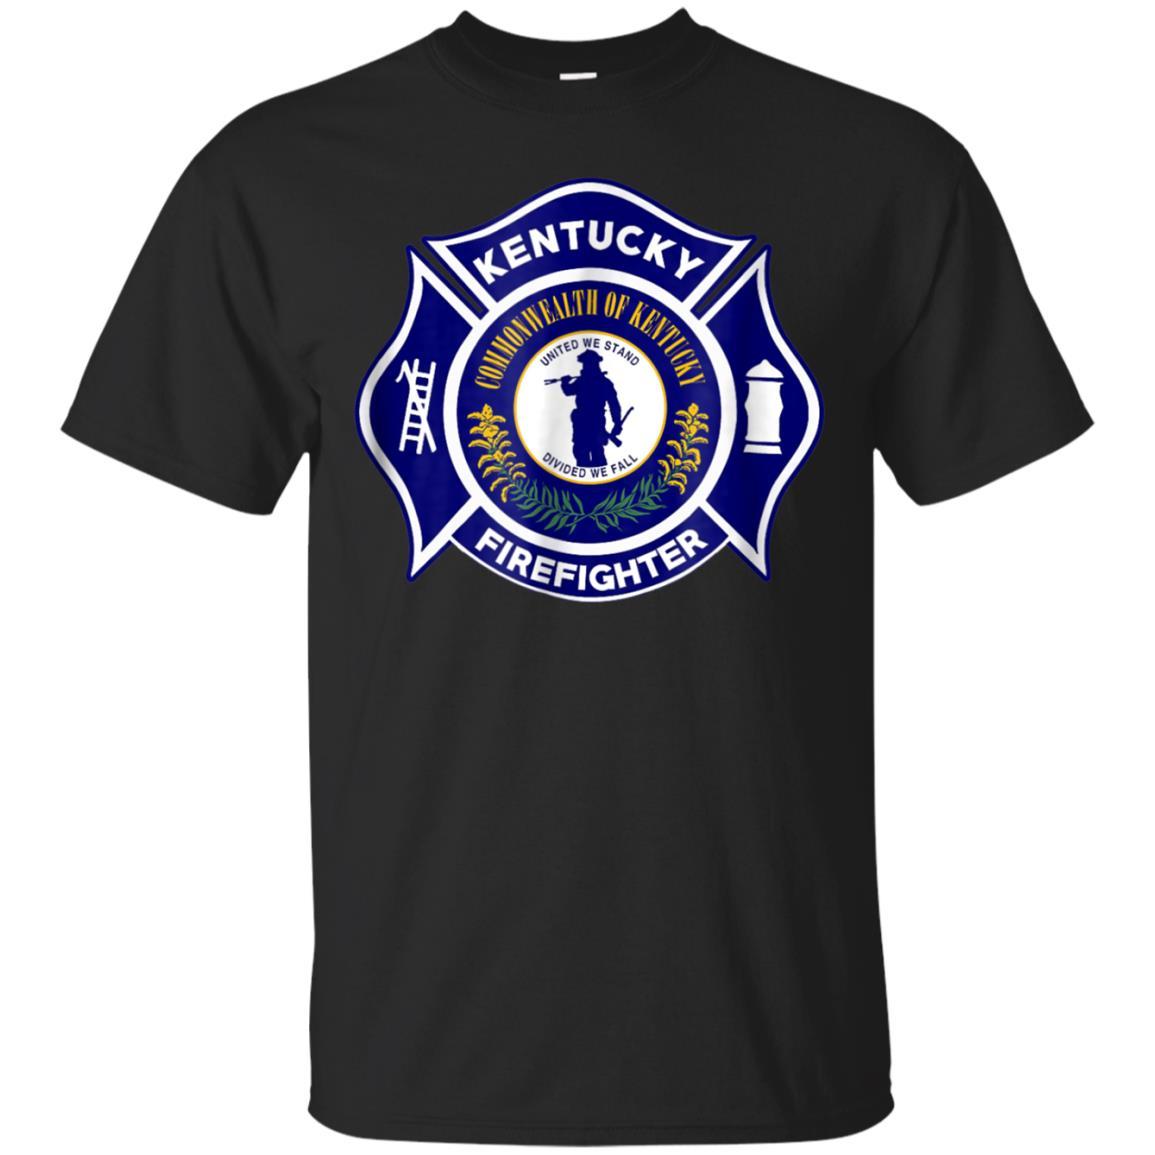 Kentucky Fire Departt Tshirt Firefighters Fire Catsolo T-shirt